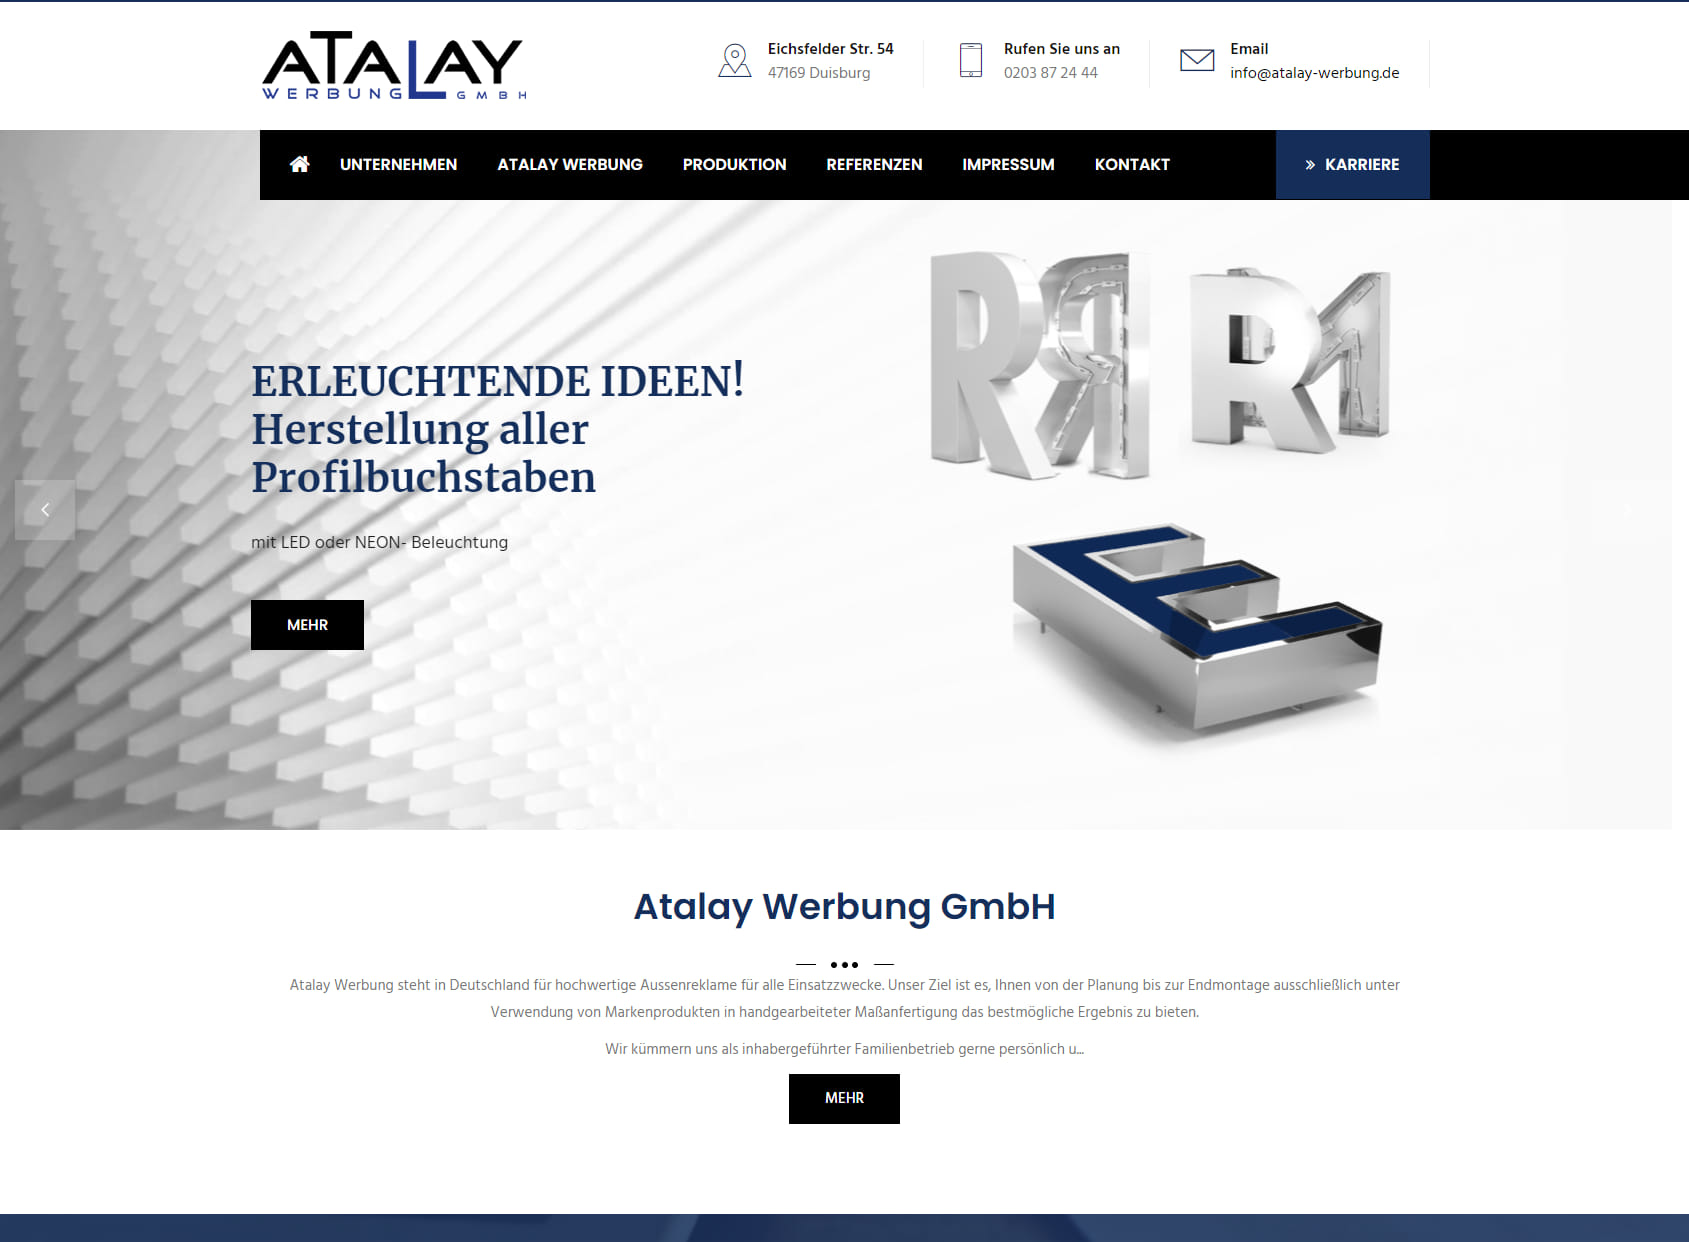 Atalay Werbung